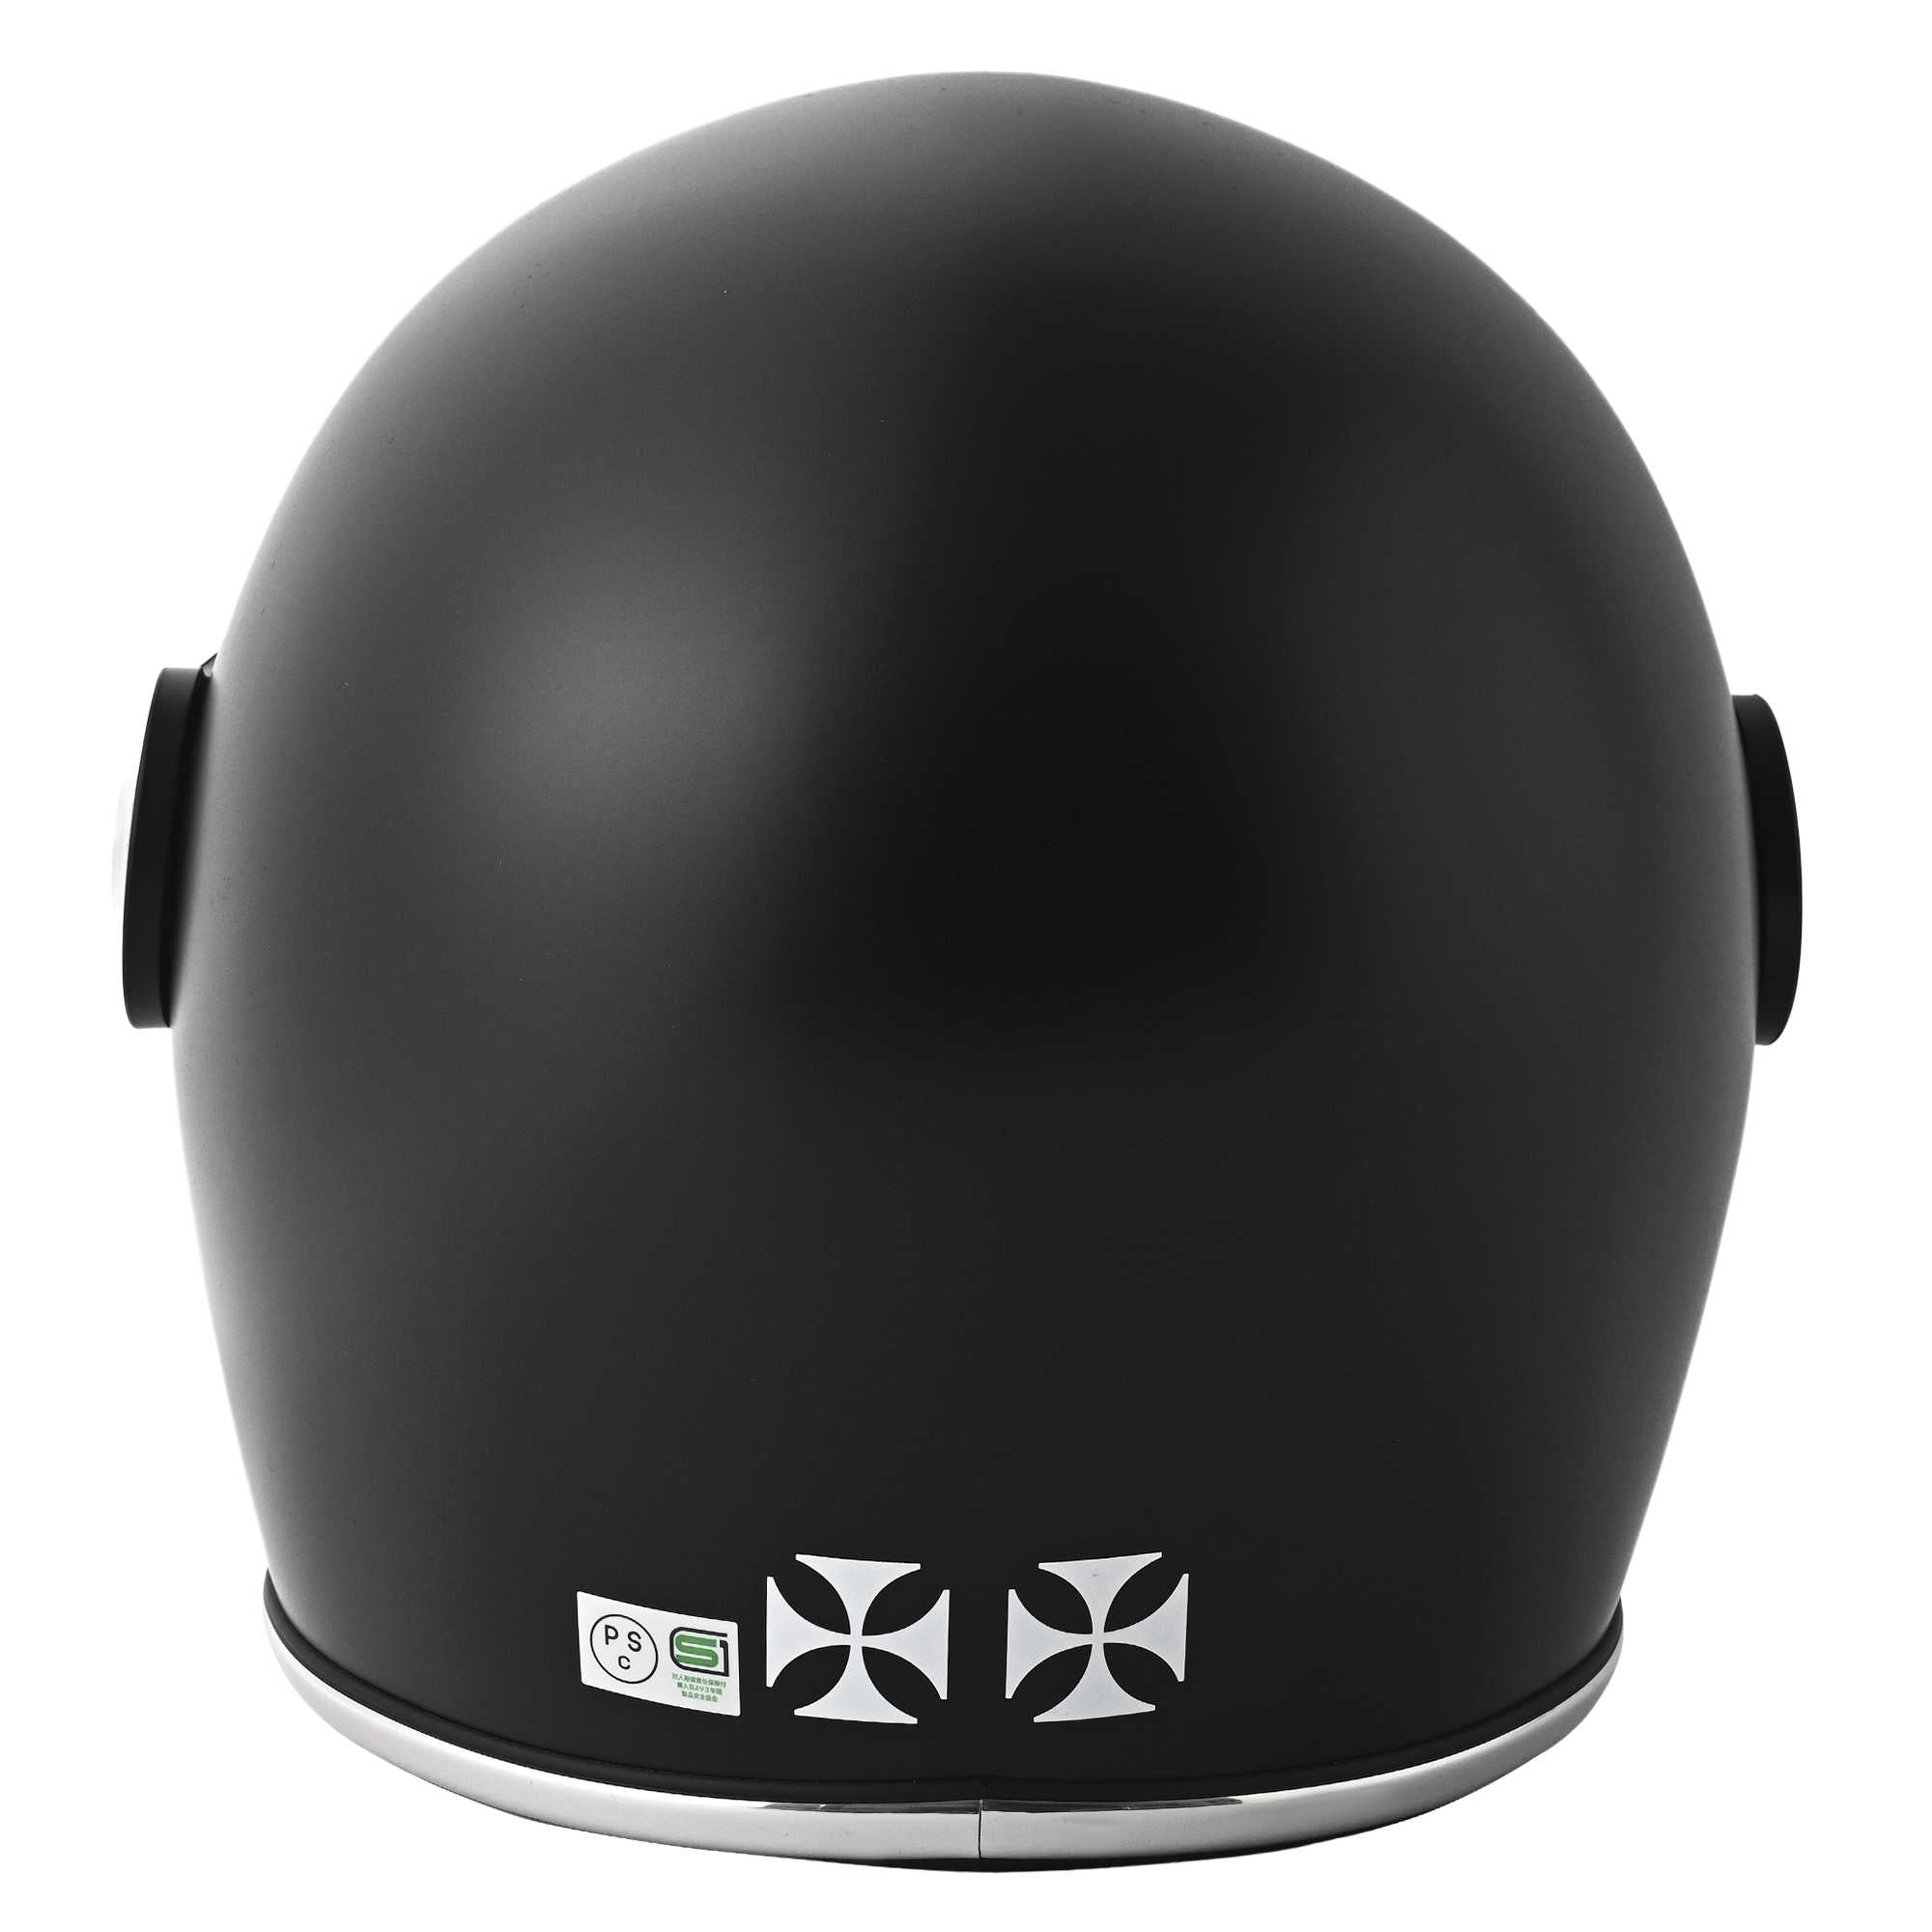 RIDEZ XX BLACK Motorcycle Full Face Helmet 